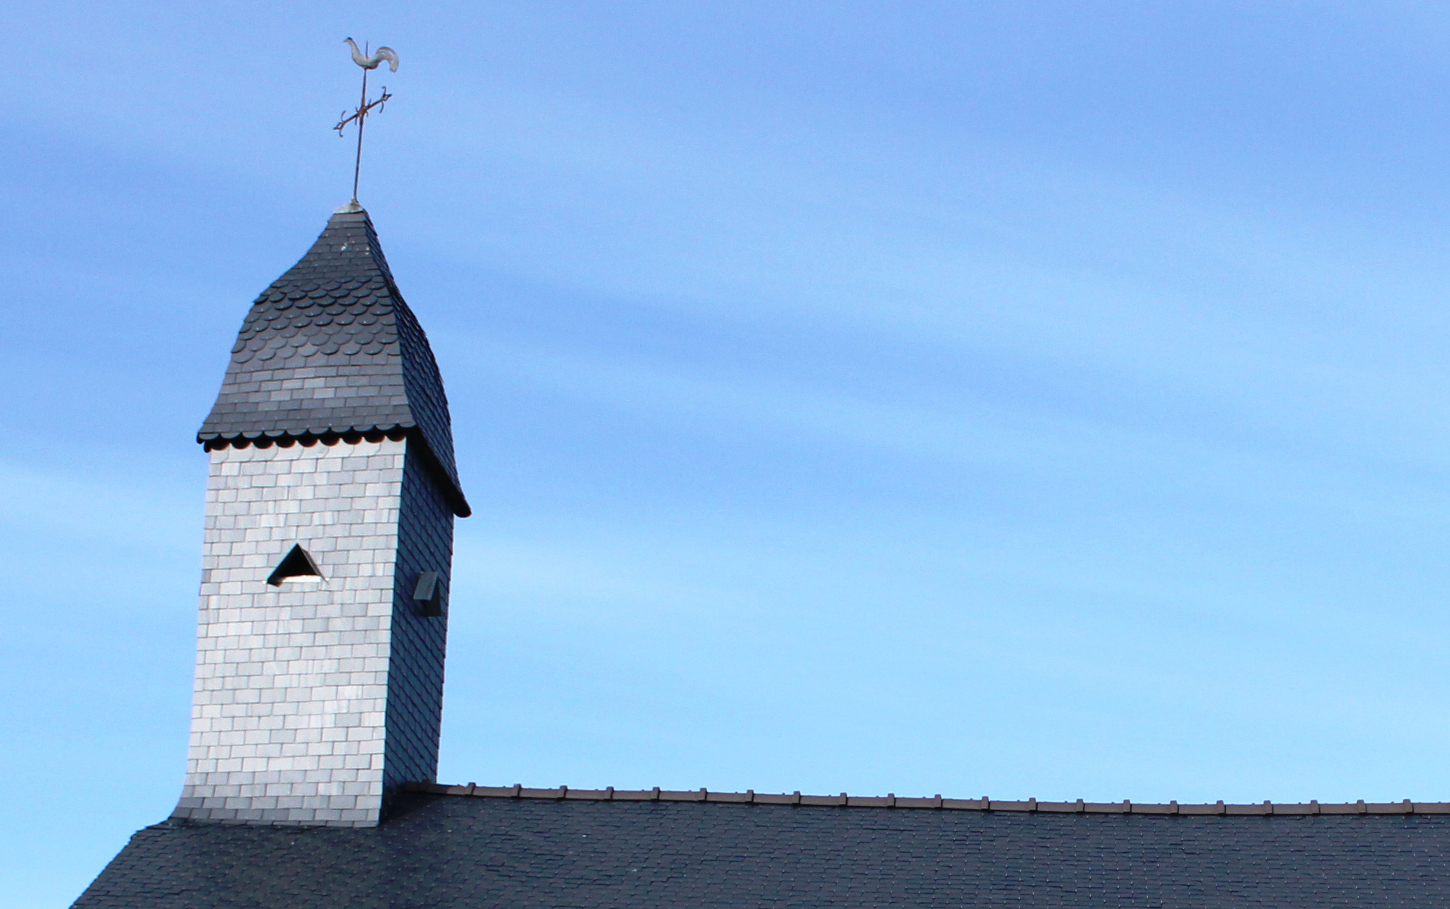 Le petit clocher à l’impérial de la chapelle Sainte-Marguerite. Cliché : Victorien Leman, 2019.